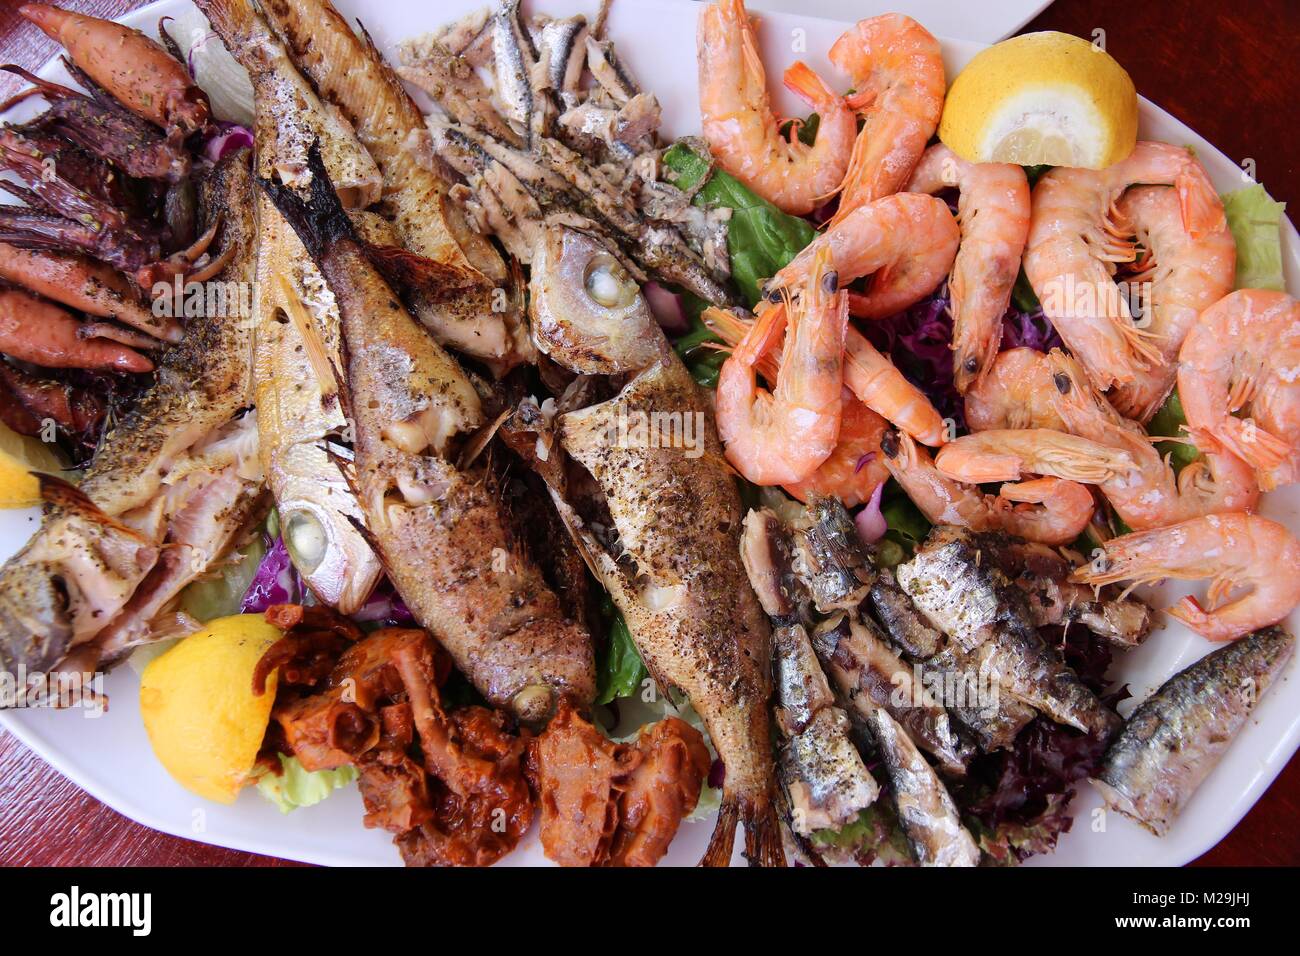 Griechische Küche - Traditionelle gegrillte Meeresfrüchte Teller mit Krabben, Sardellen, Sardinen, Tintenfisch und andere Fische. Stockfoto